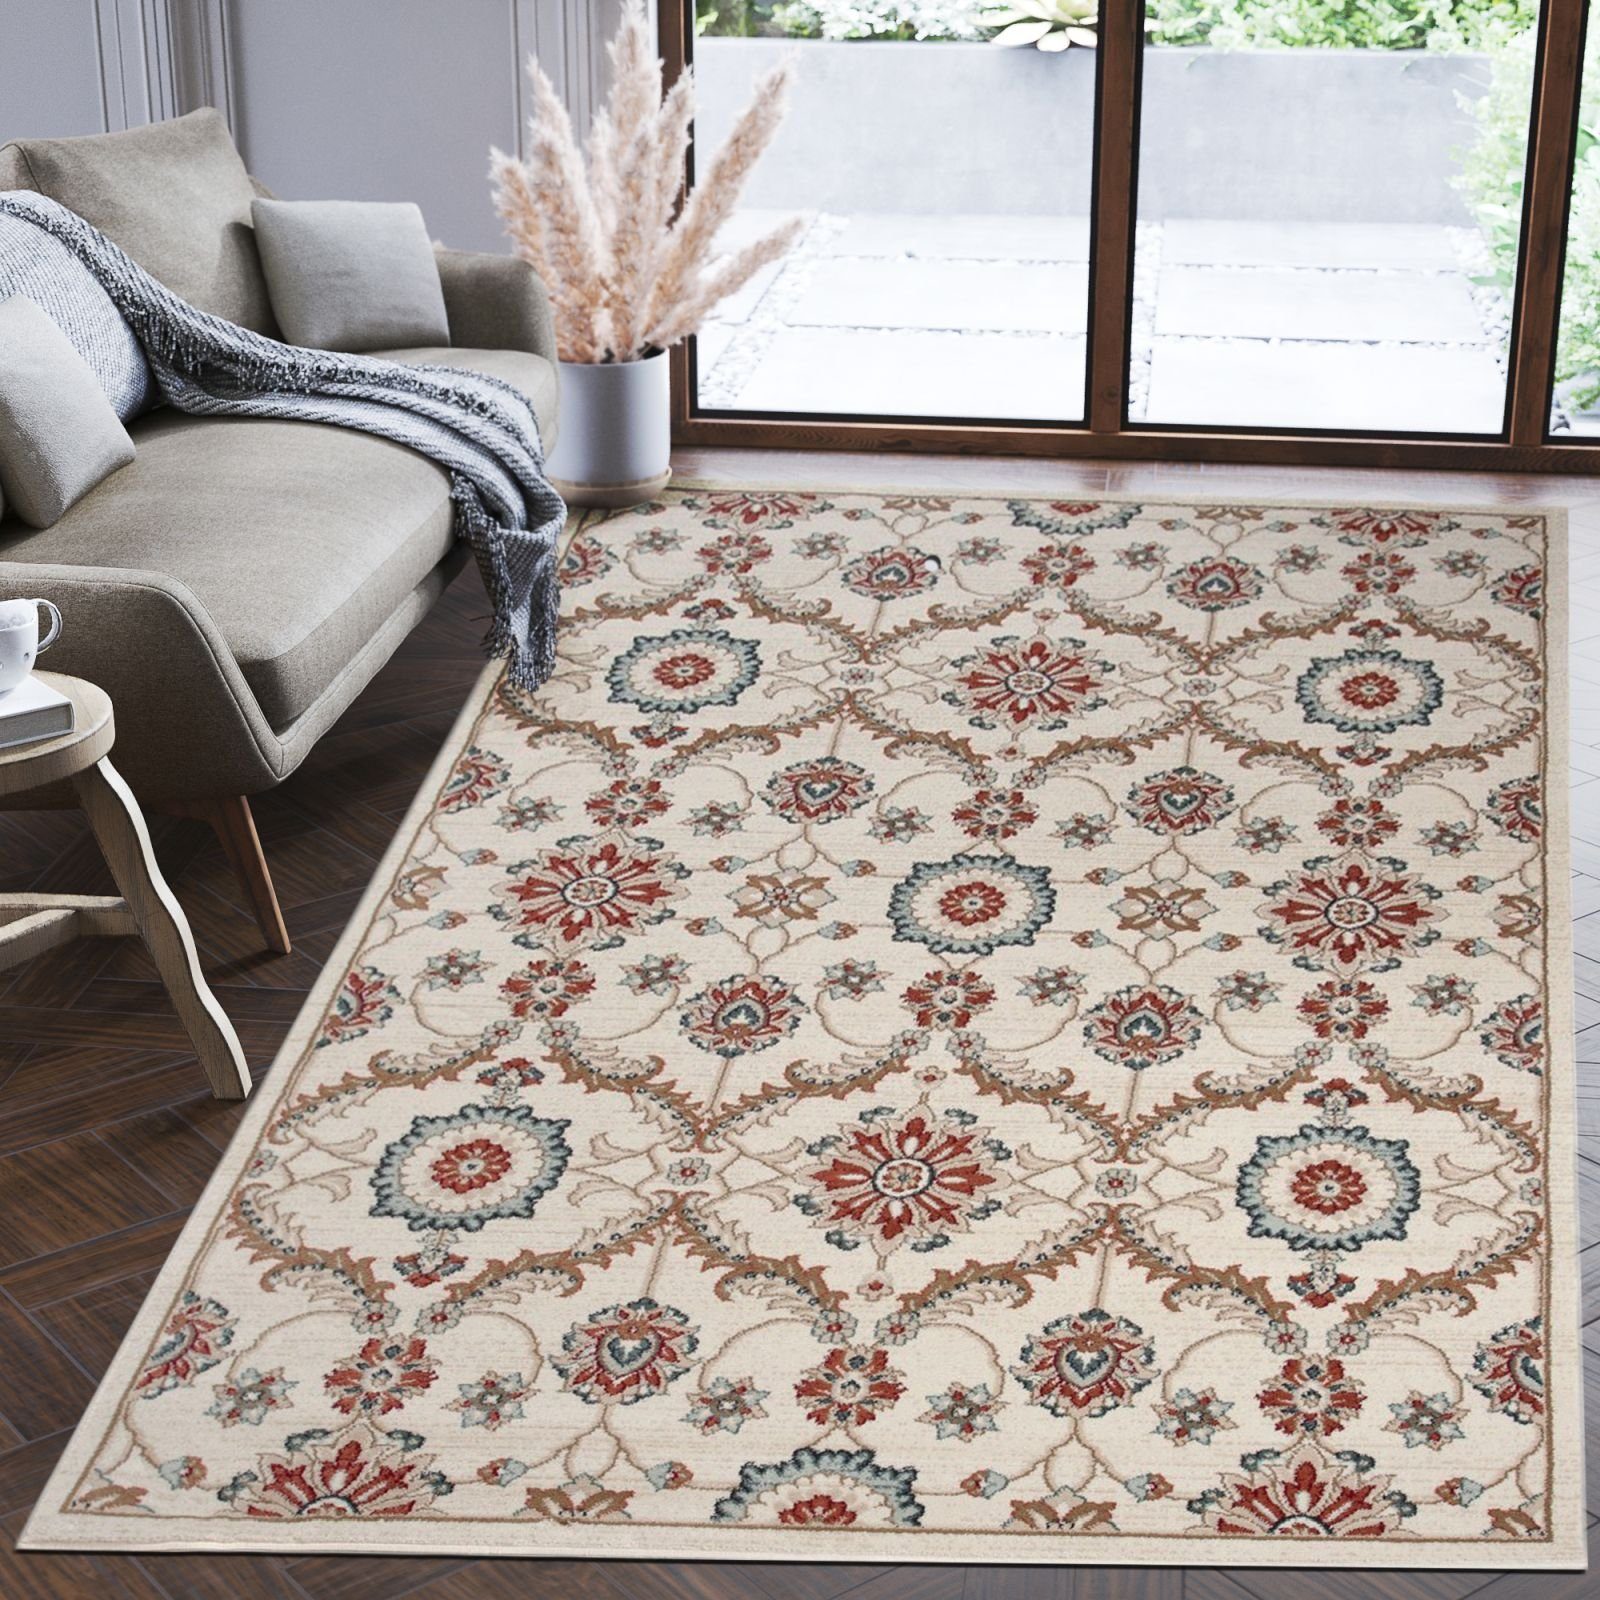 Orientteppich Oriente Teppich - Traditioneller Teppich Orient Creme Beige Ivory, Mazovia, 200 x 300 cm, Geeignet für Fußbodenheizung, Pflegeleicht, Wohnzimmerteppich